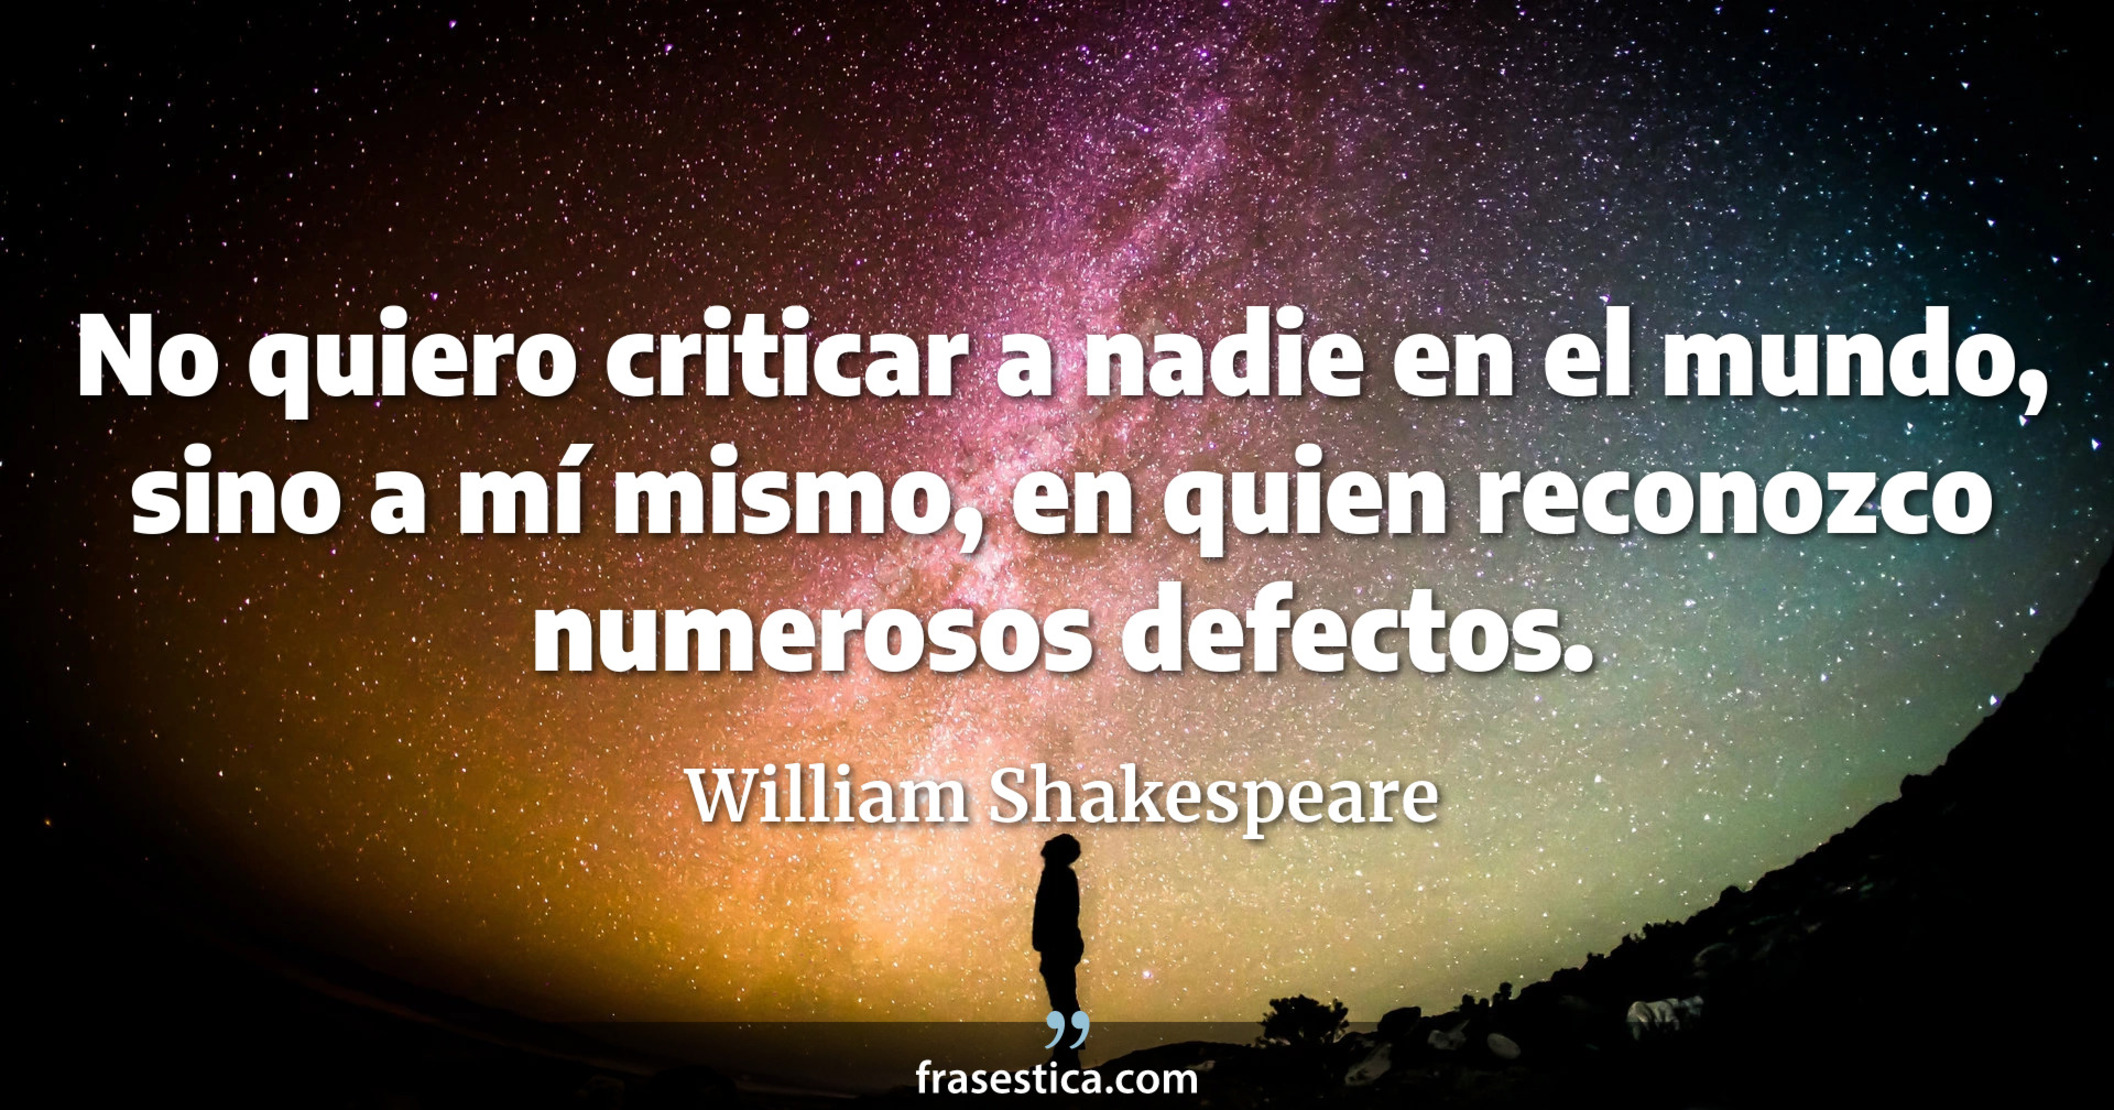 No quiero criticar a nadie en el mundo, sino a mí mismo, en quien reconozco numerosos defectos. - William Shakespeare